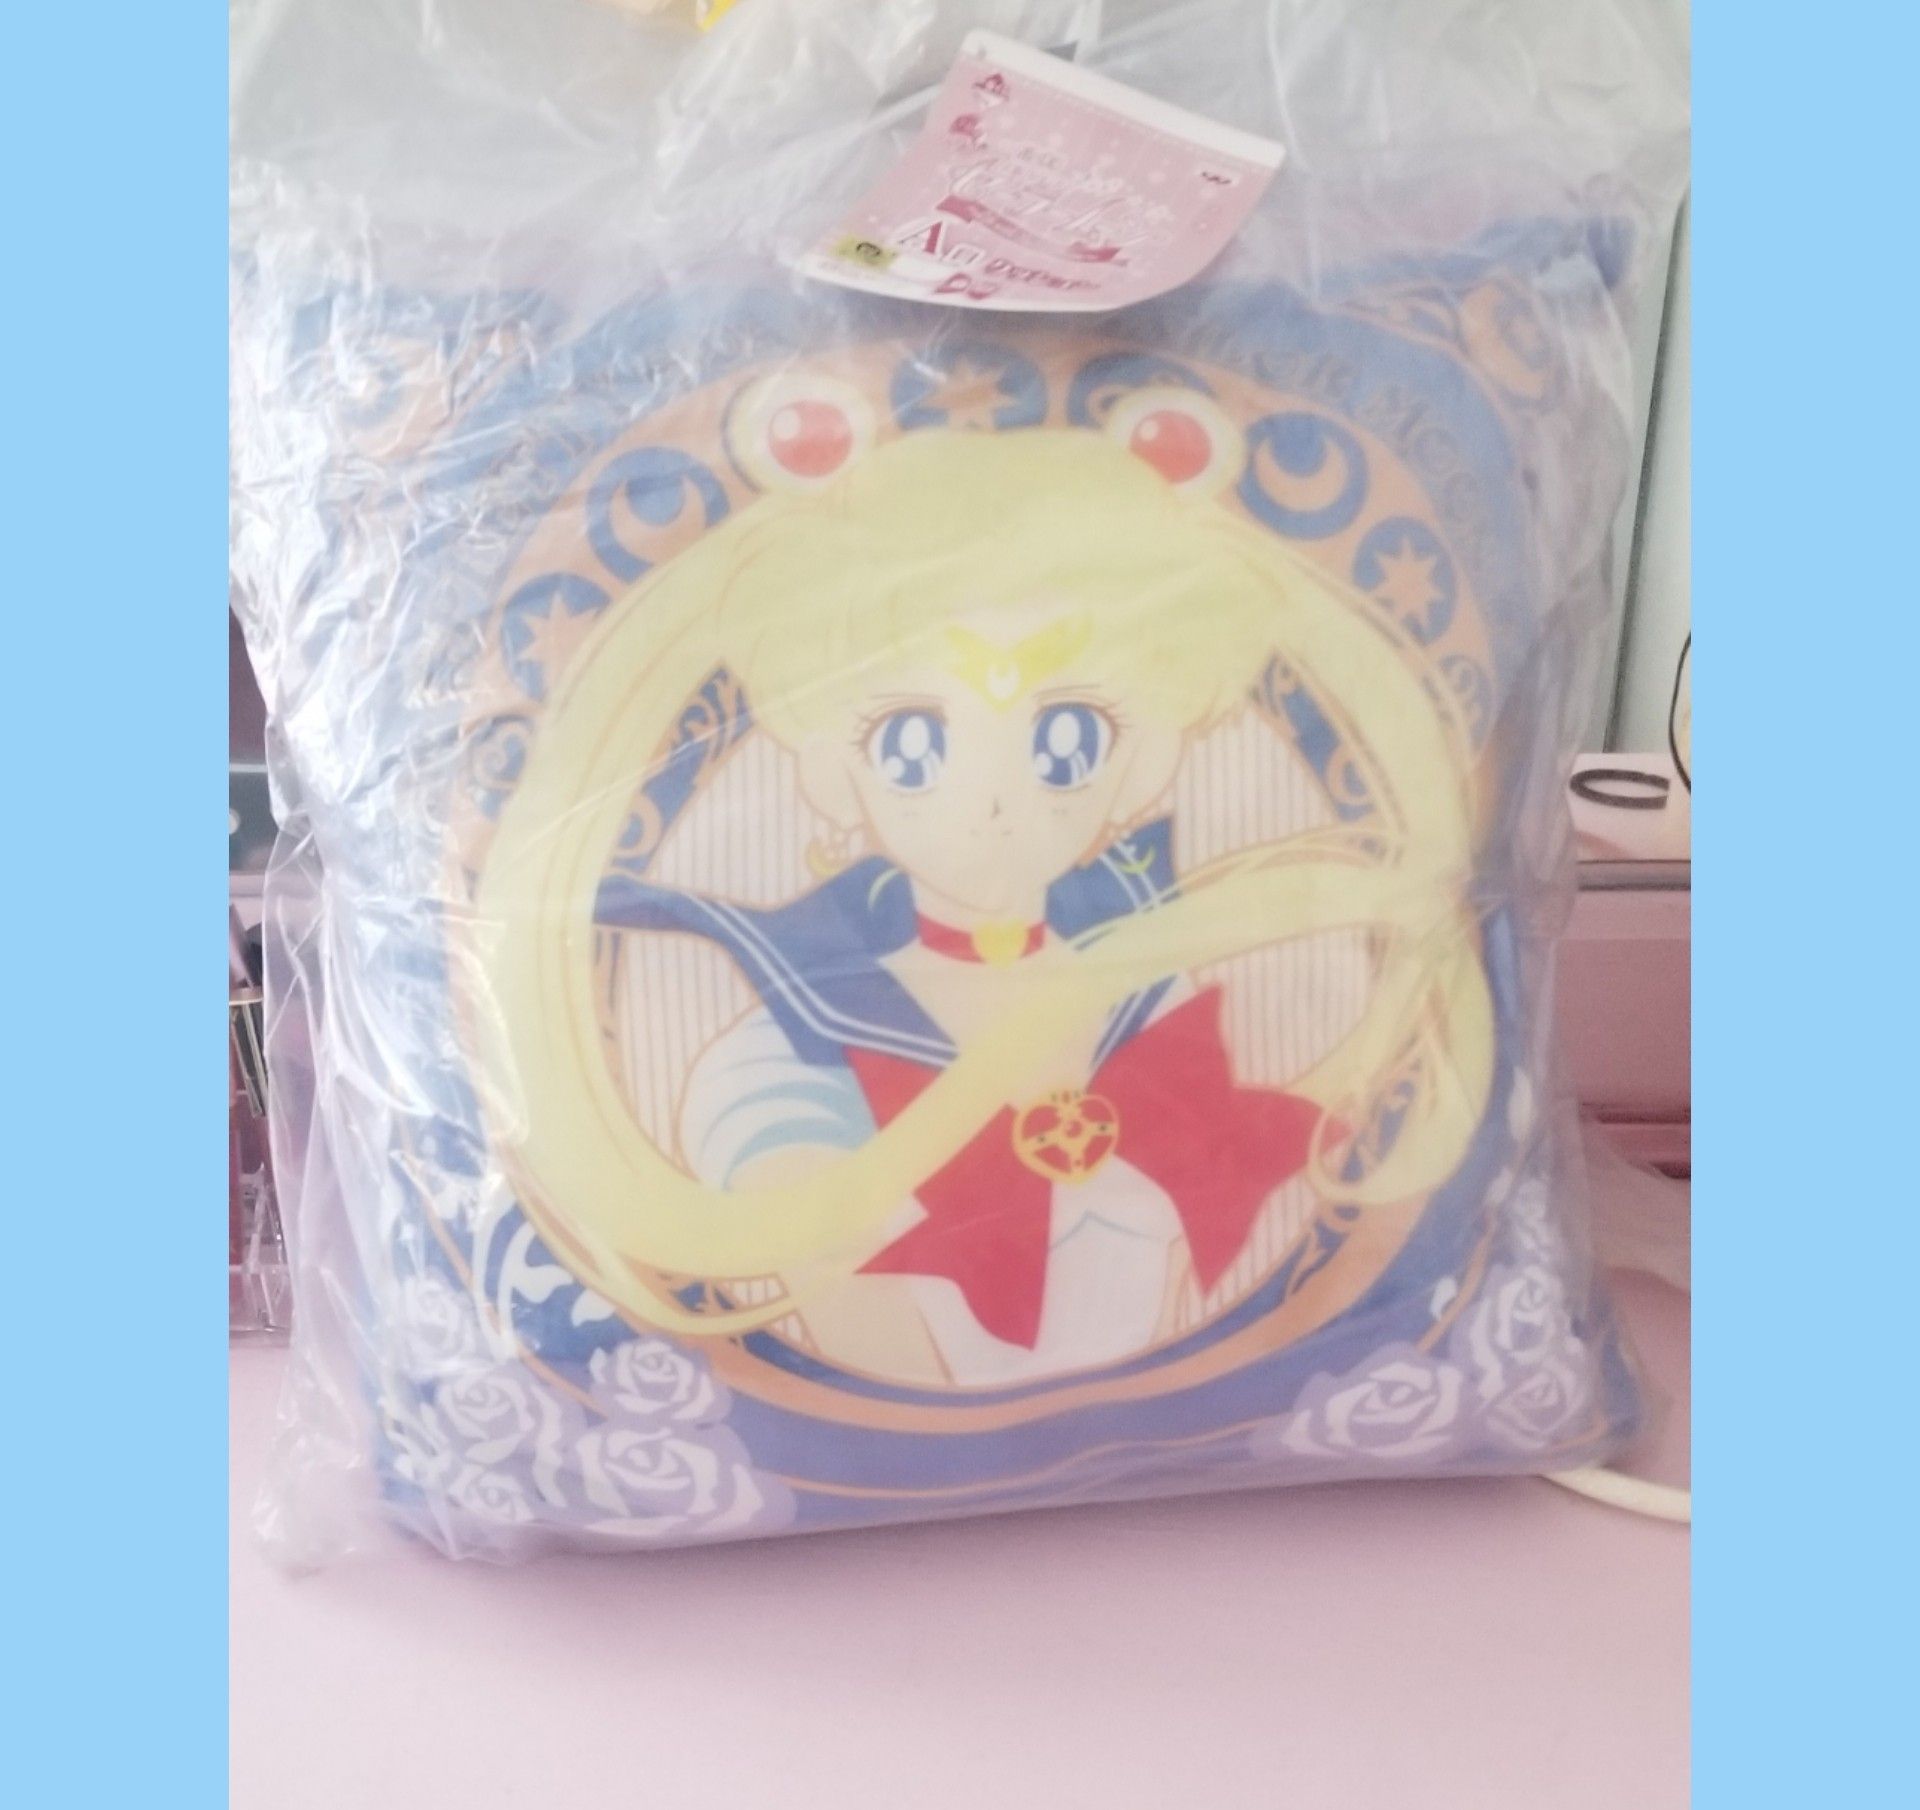 Sailor moon kuji pillow/cushion